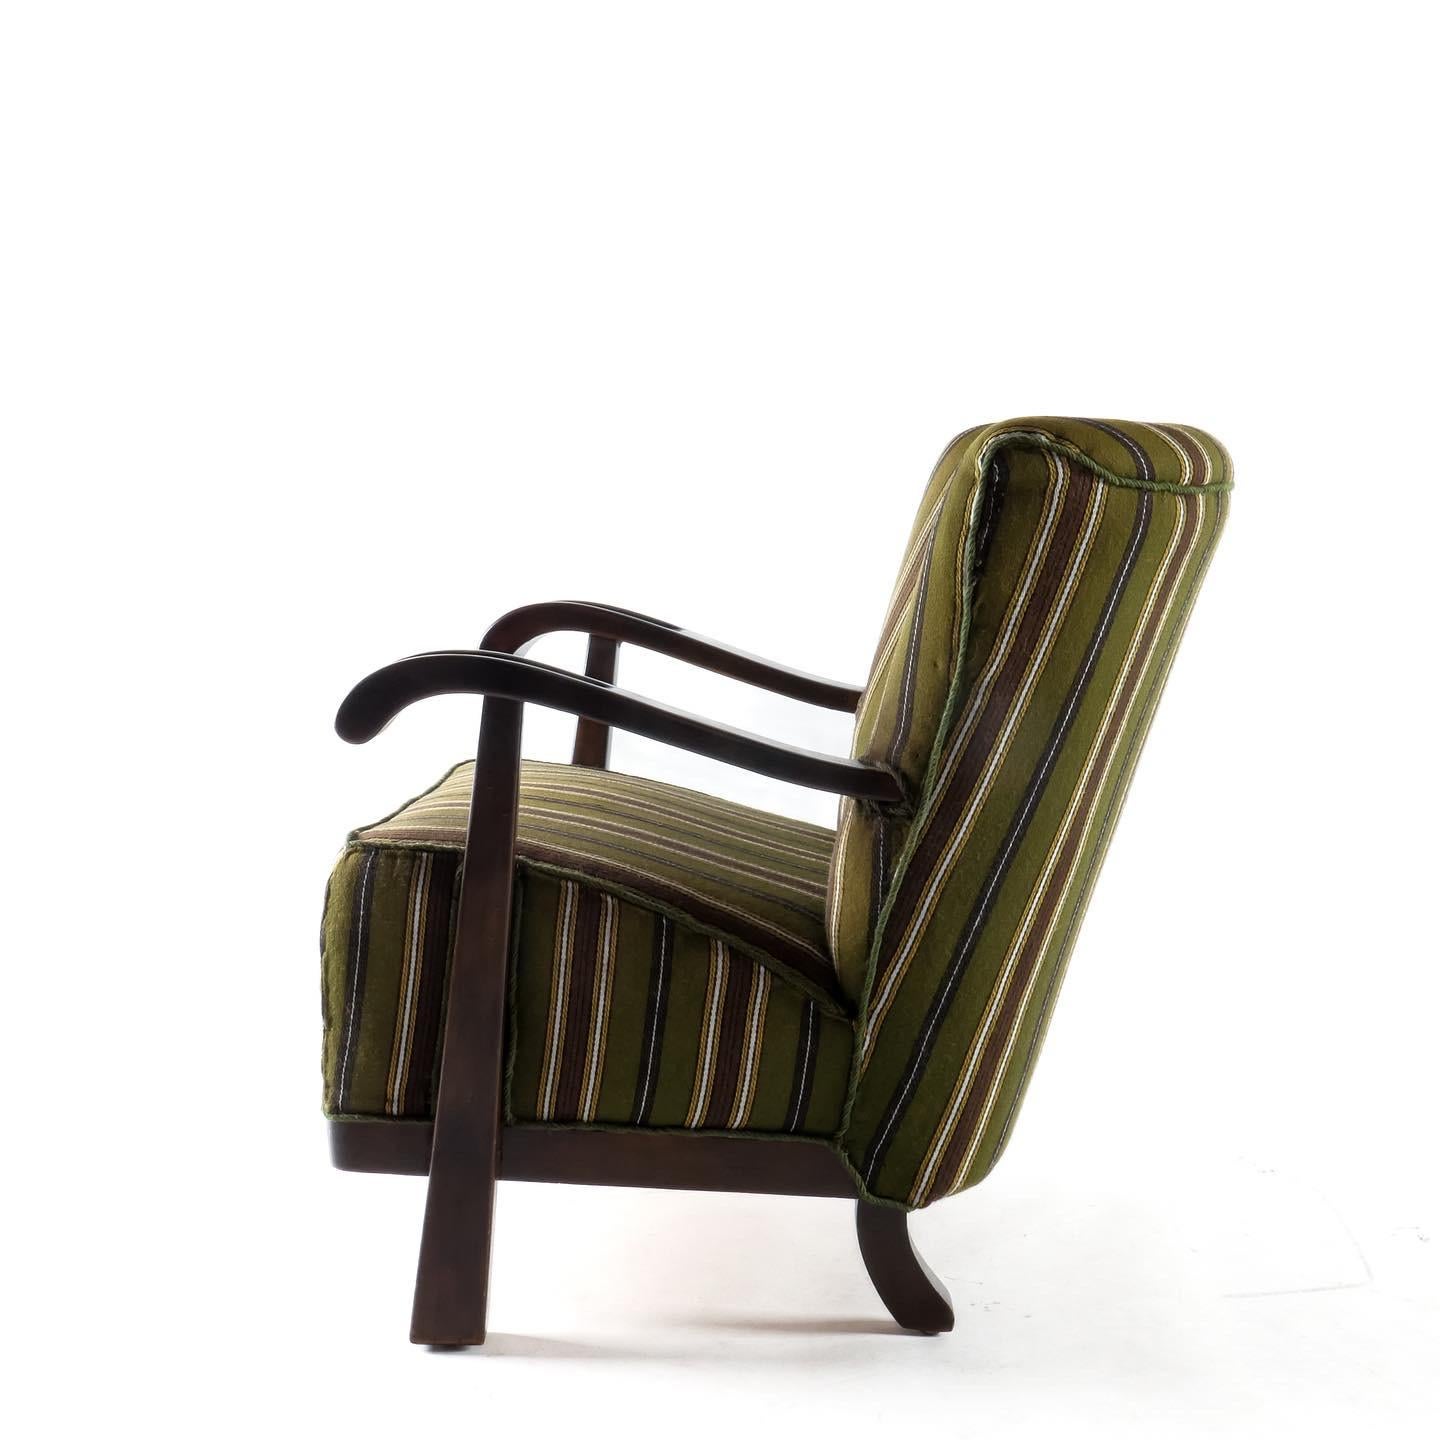 Ein klassischer Silhouette-Sessel von Magnus Oleson aus den 1930er Jahren. Gestell aus dunkel gebeizter Buche und gestreifte Wollpolsterung, die original zu sein scheint. Dramatisches Seitenprofil mit knopfgetufteter Rückenlehne. Es sieht gut aus